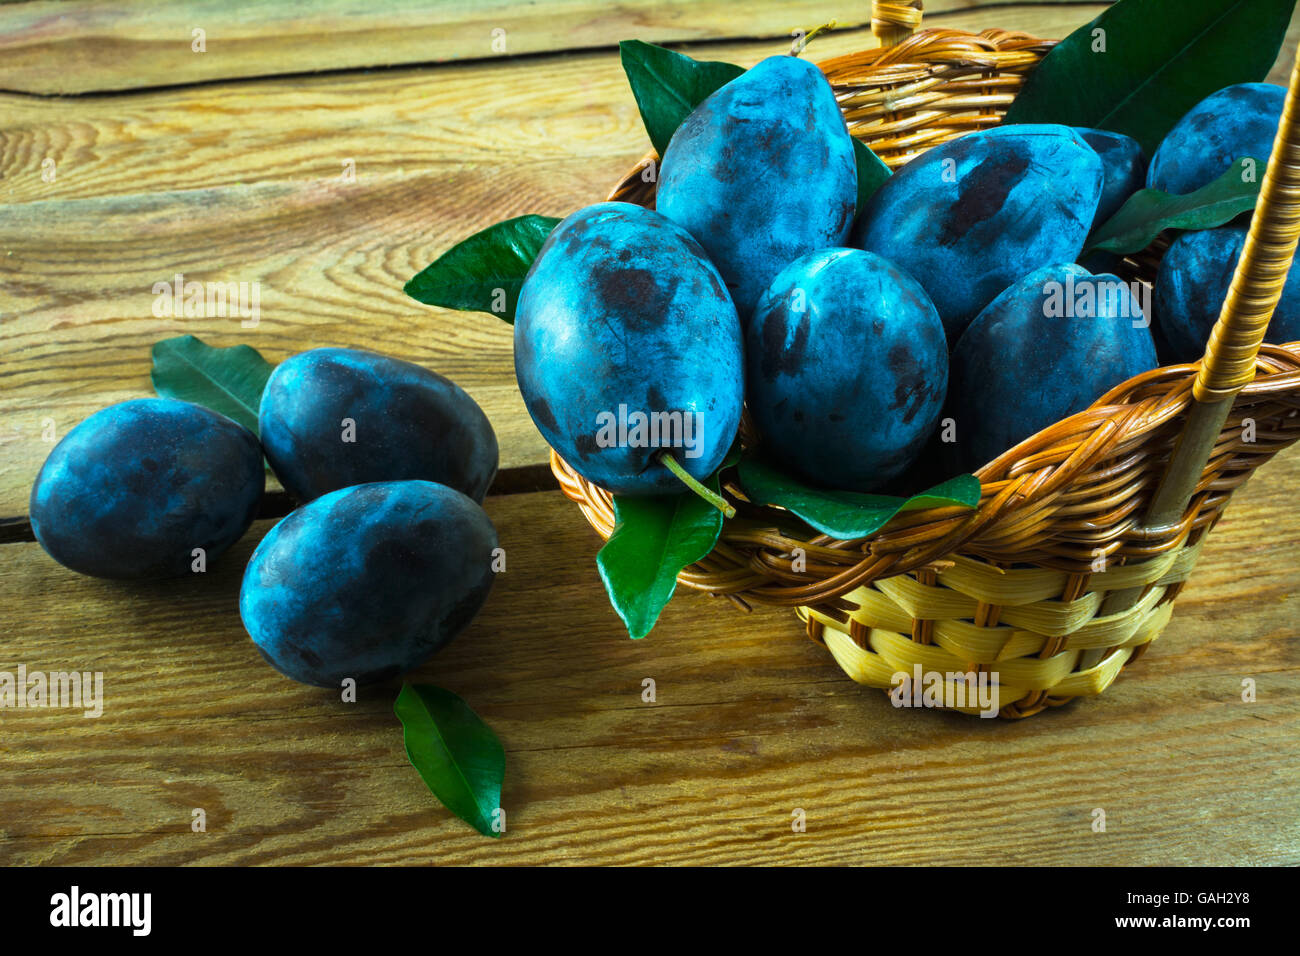 Prune fruits pruneaux dans un panier sur une table en bois, Close up. Selective focus Banque D'Images